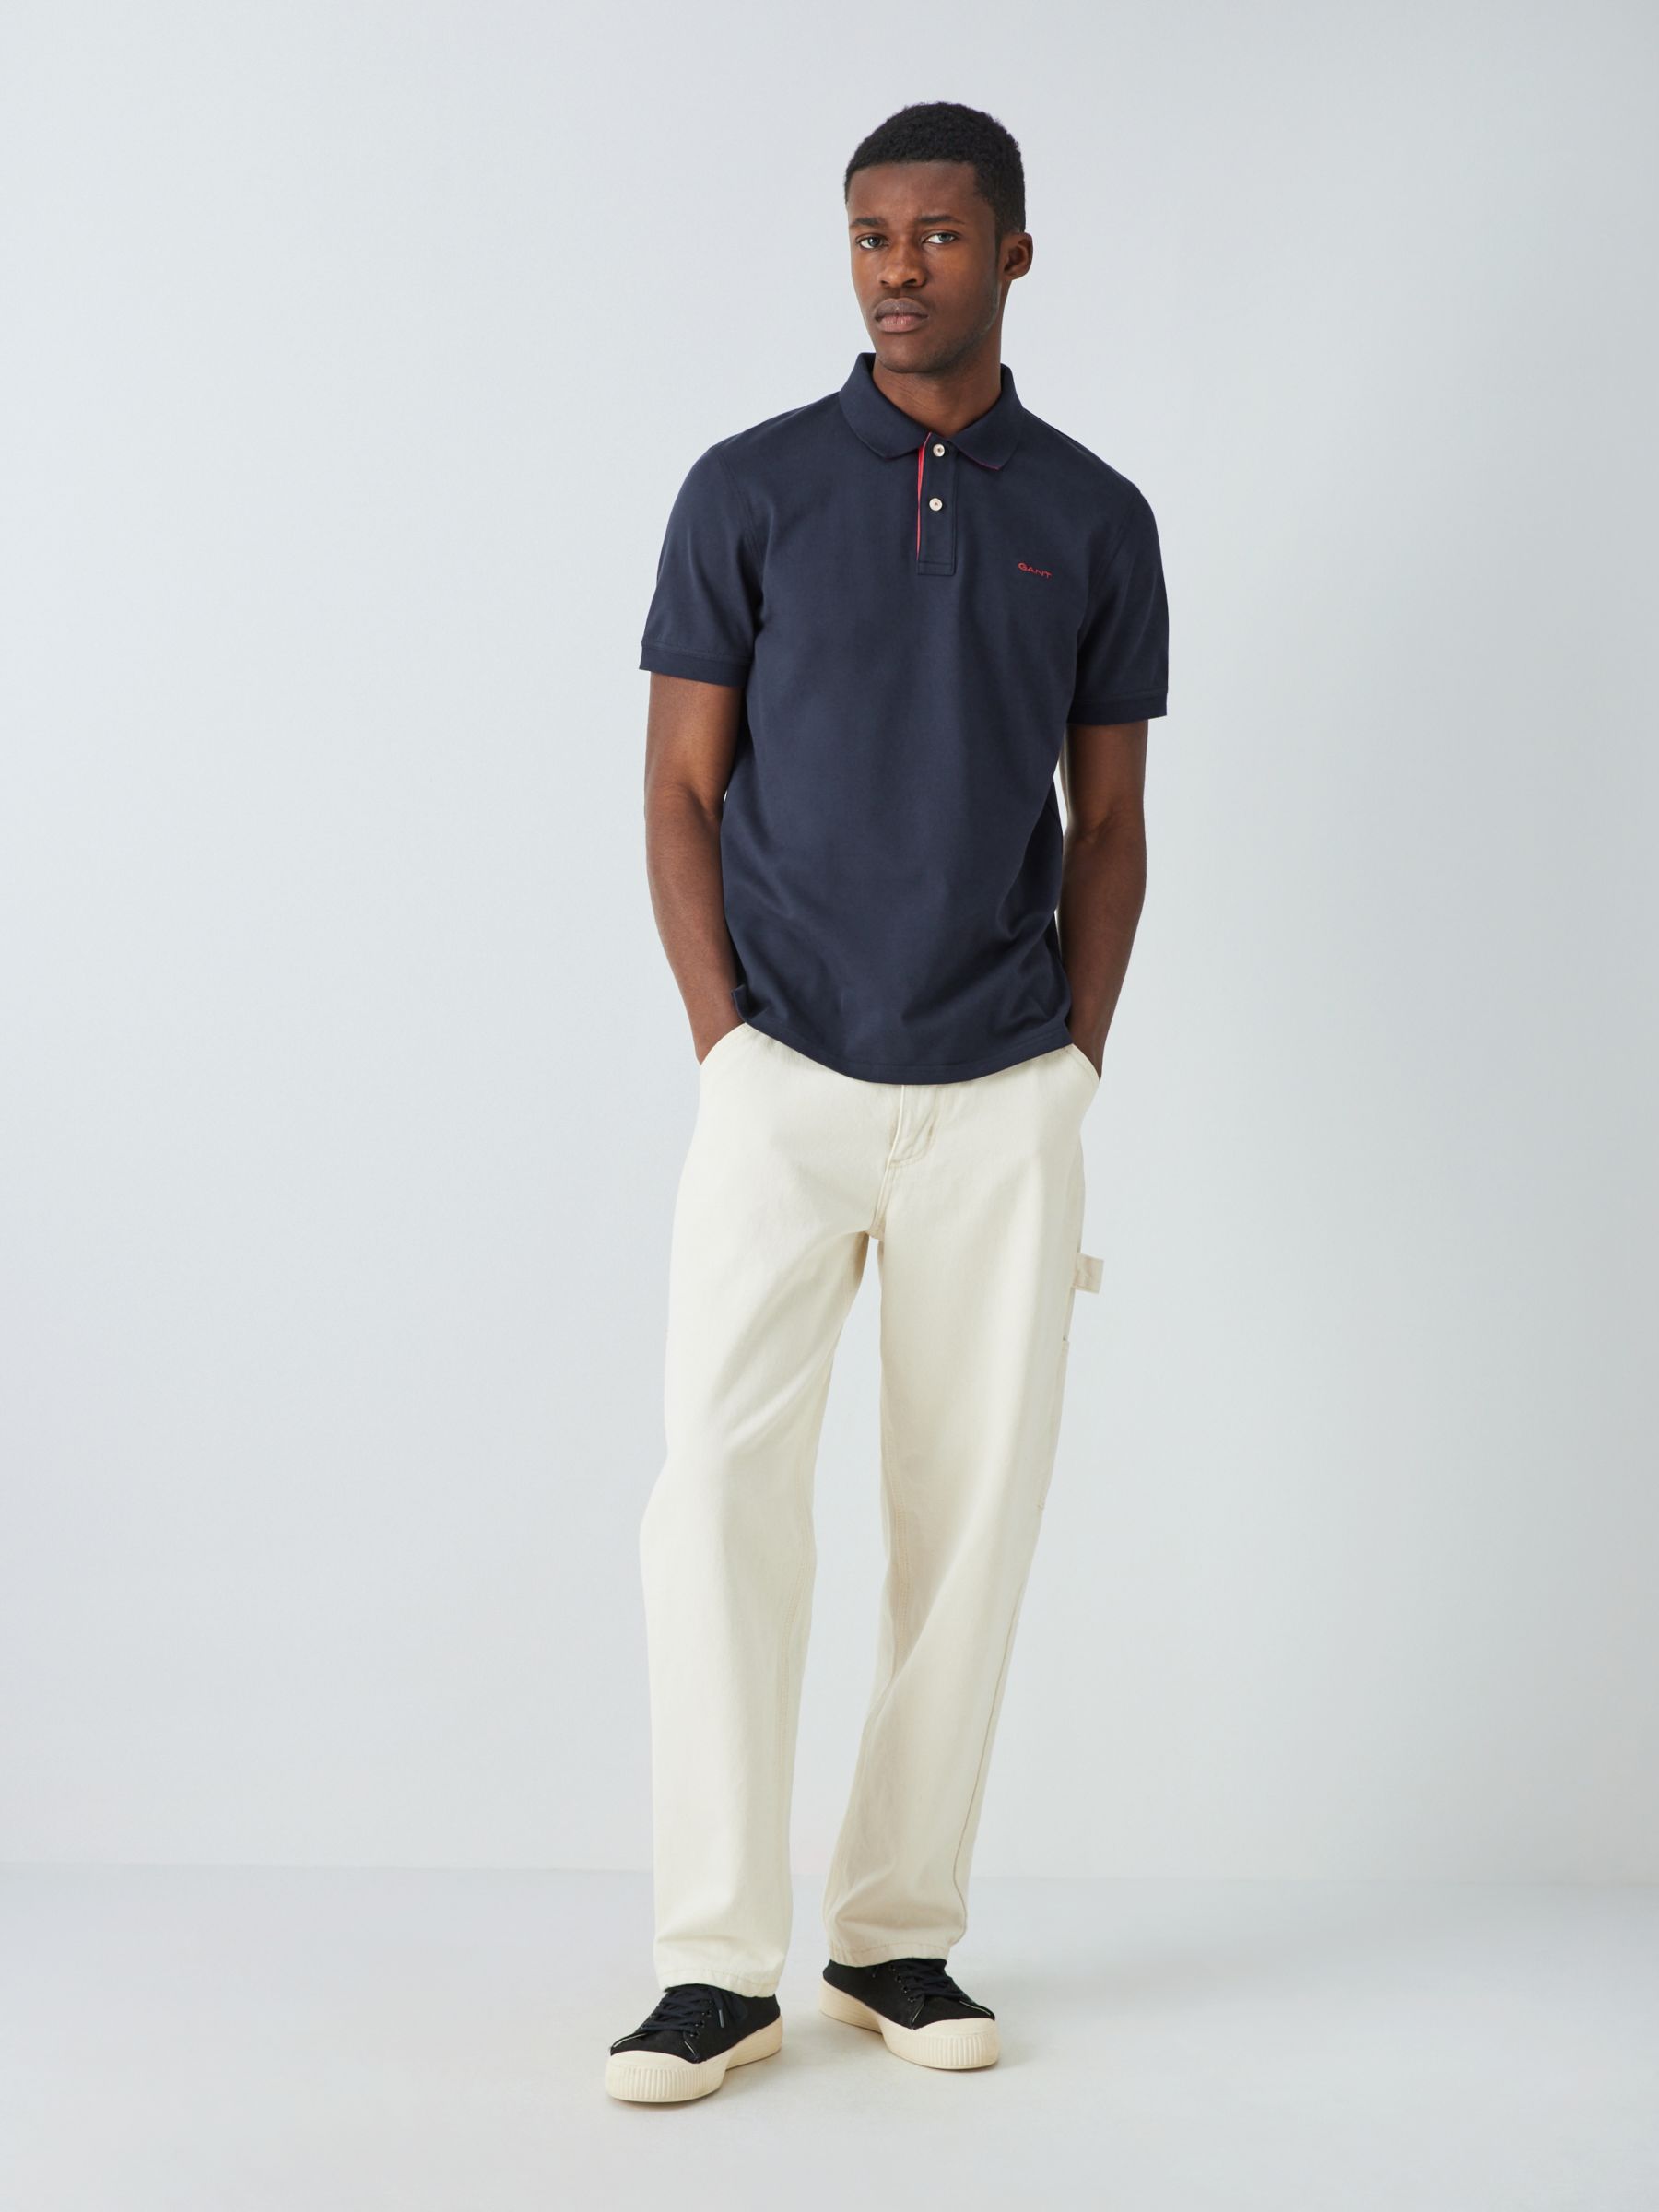 GANT Piqué Textured Short Sleeve Polo Shirt , Evening Blue, M